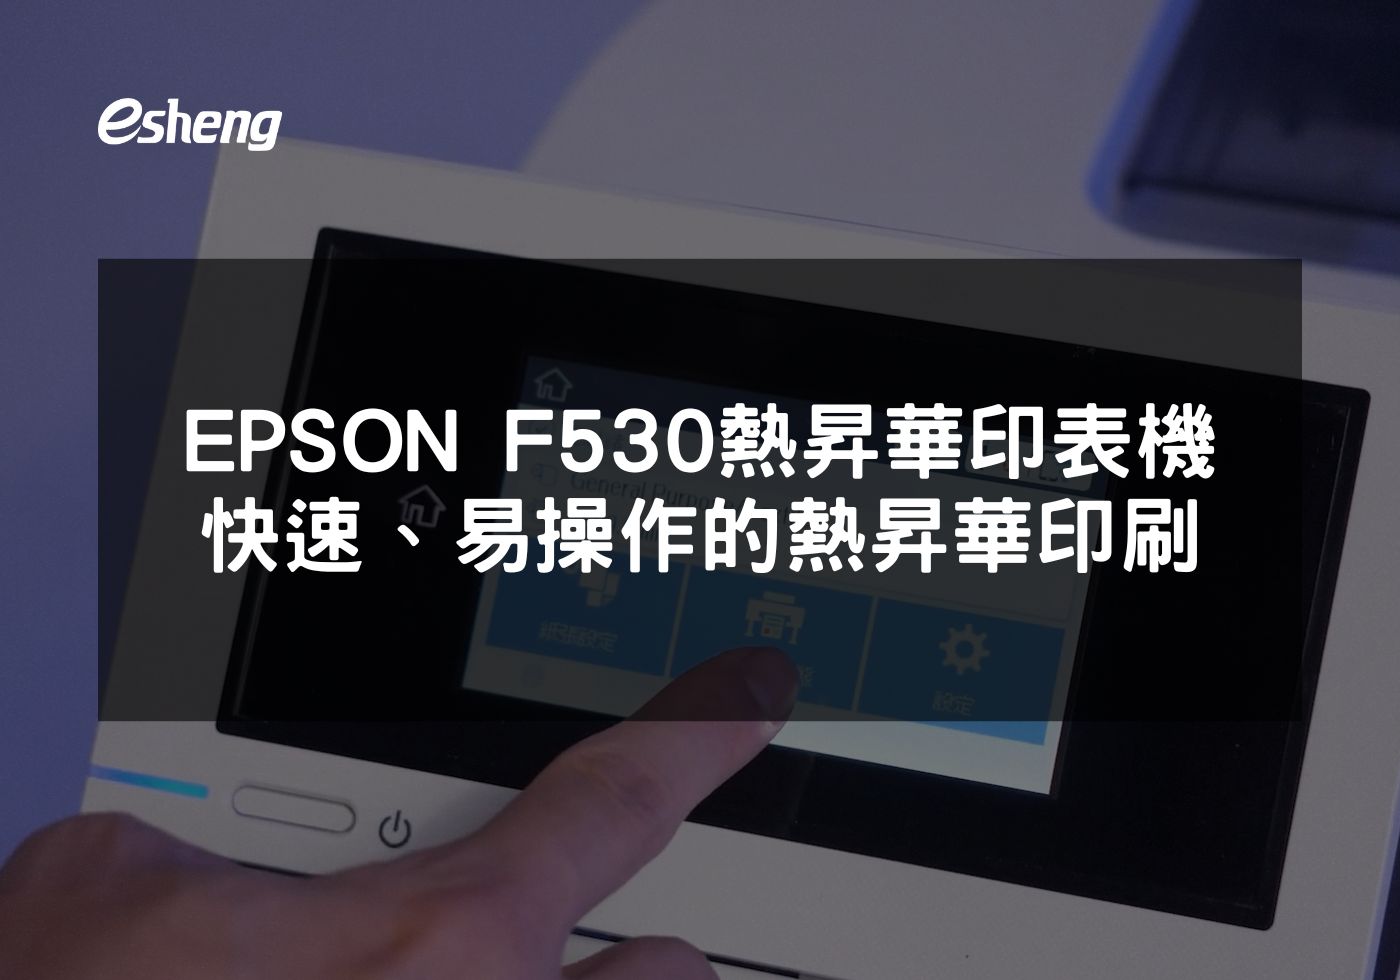 您目前正在查看 EPSON F530熱昇華印表機 高品質、快速、易操作的熱昇華印刷解決方案